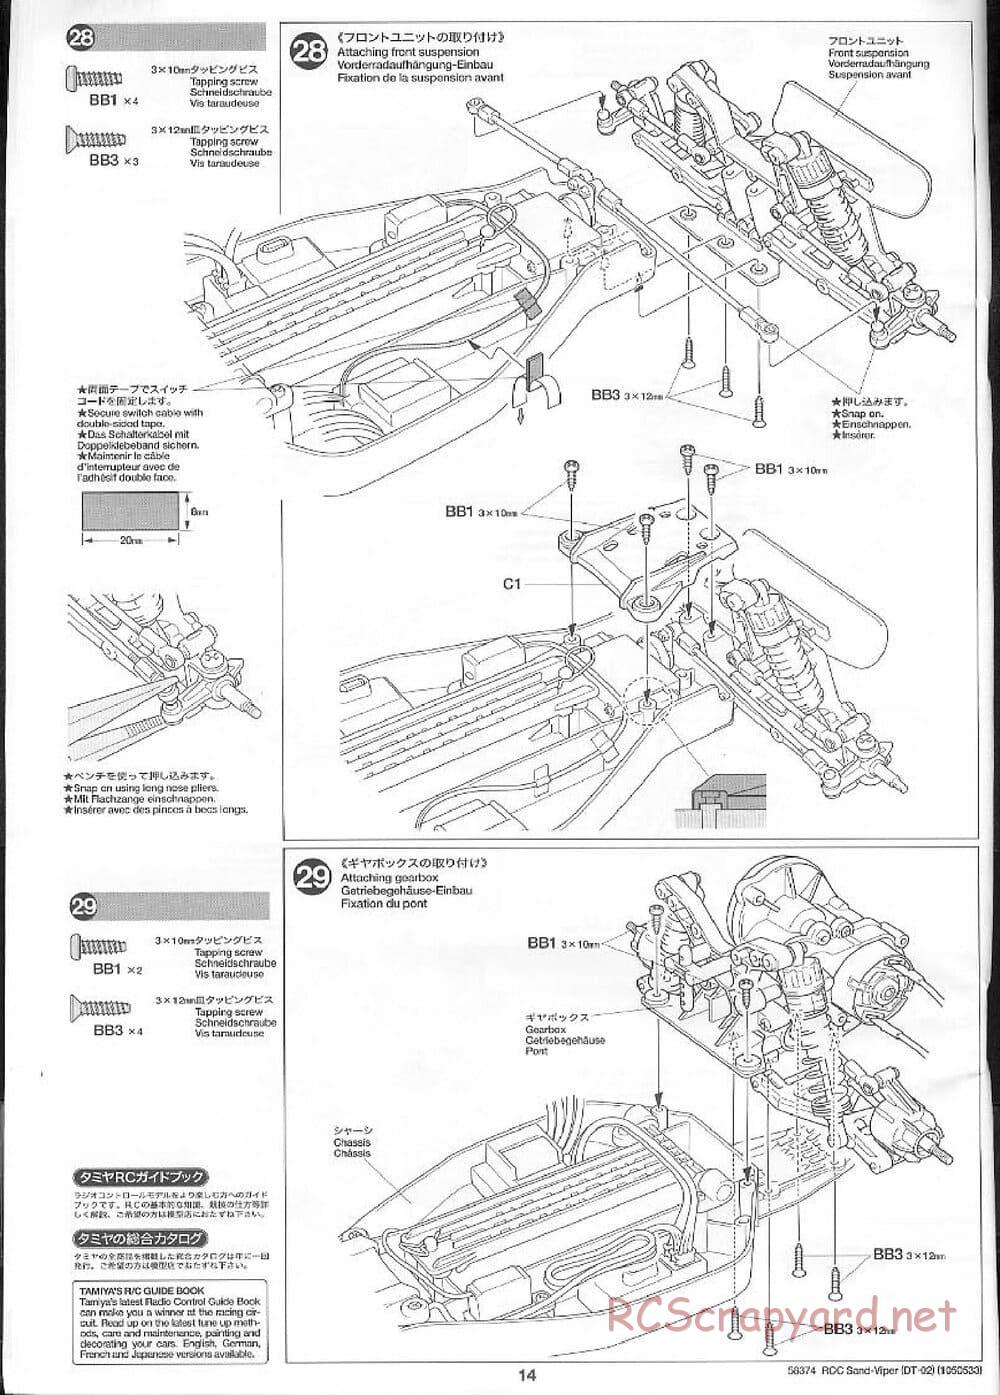 Tamiya - Sand Viper Chassis - Manual - Page 14